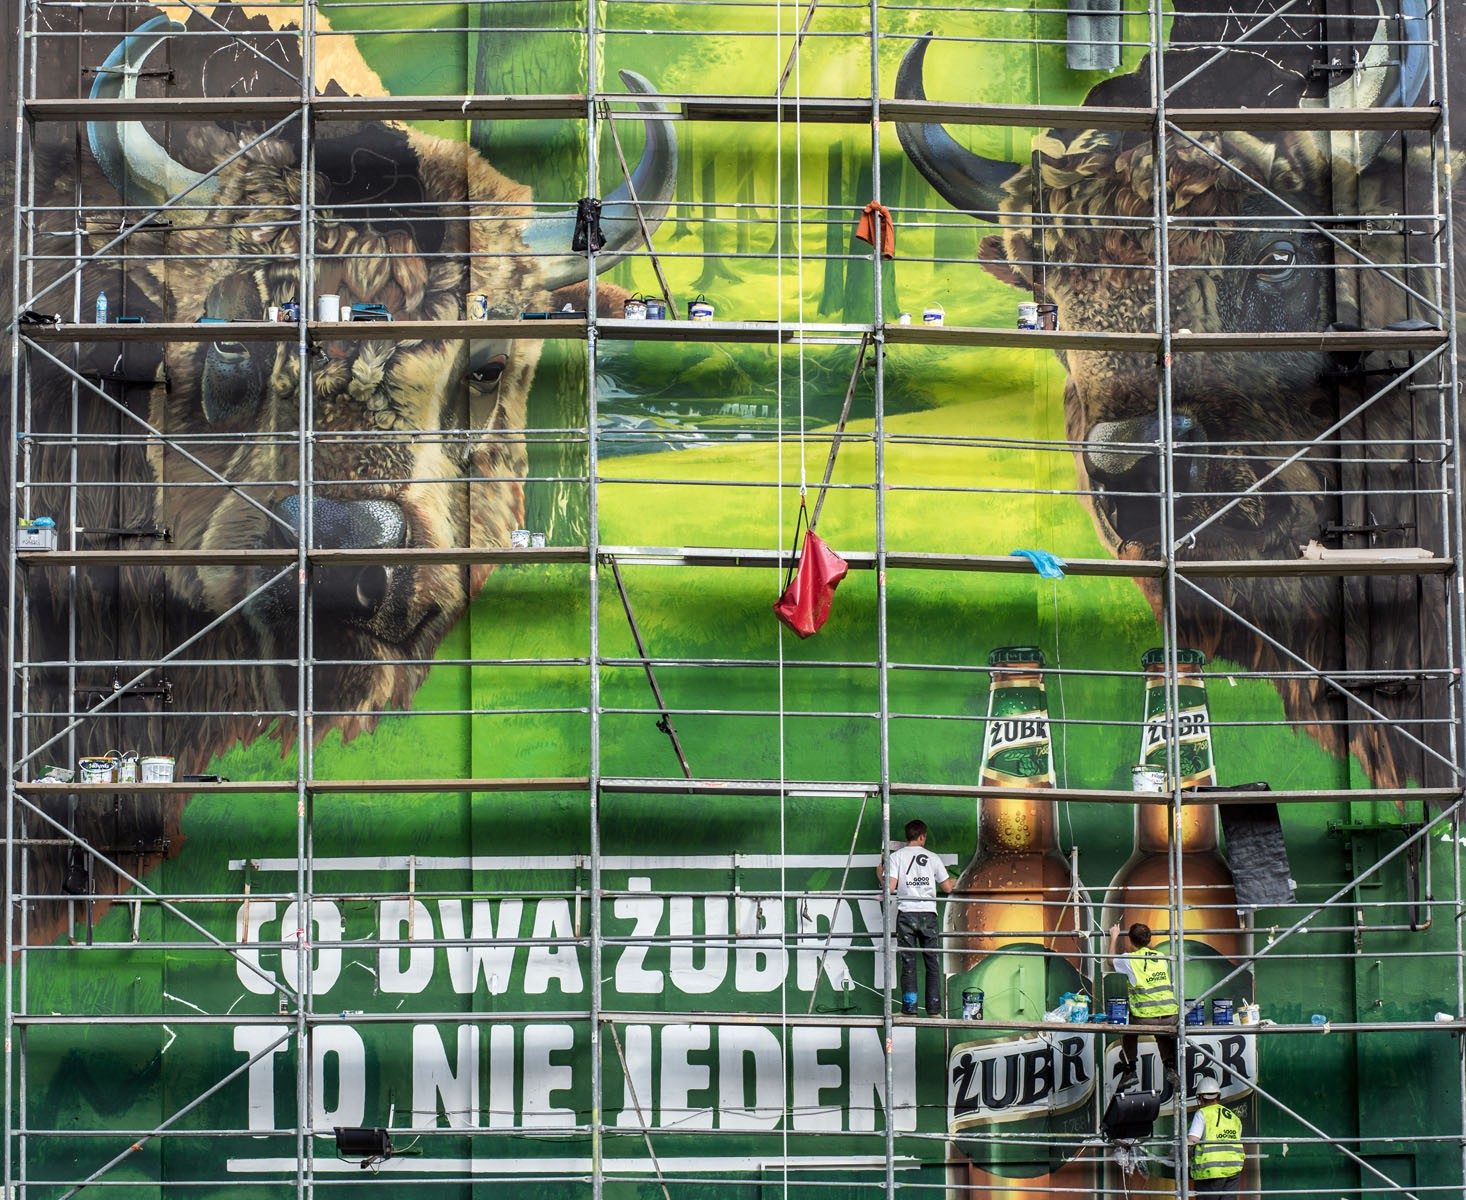 Co dwa żubry to nie jeden mural reklamowy Żubr Warszawa Bracka Dom Towarowy Bracia Jabłkowscy | Grafika ścienna dla marki Żubr - Co dwa Żubry to nie jeden | Portfolio